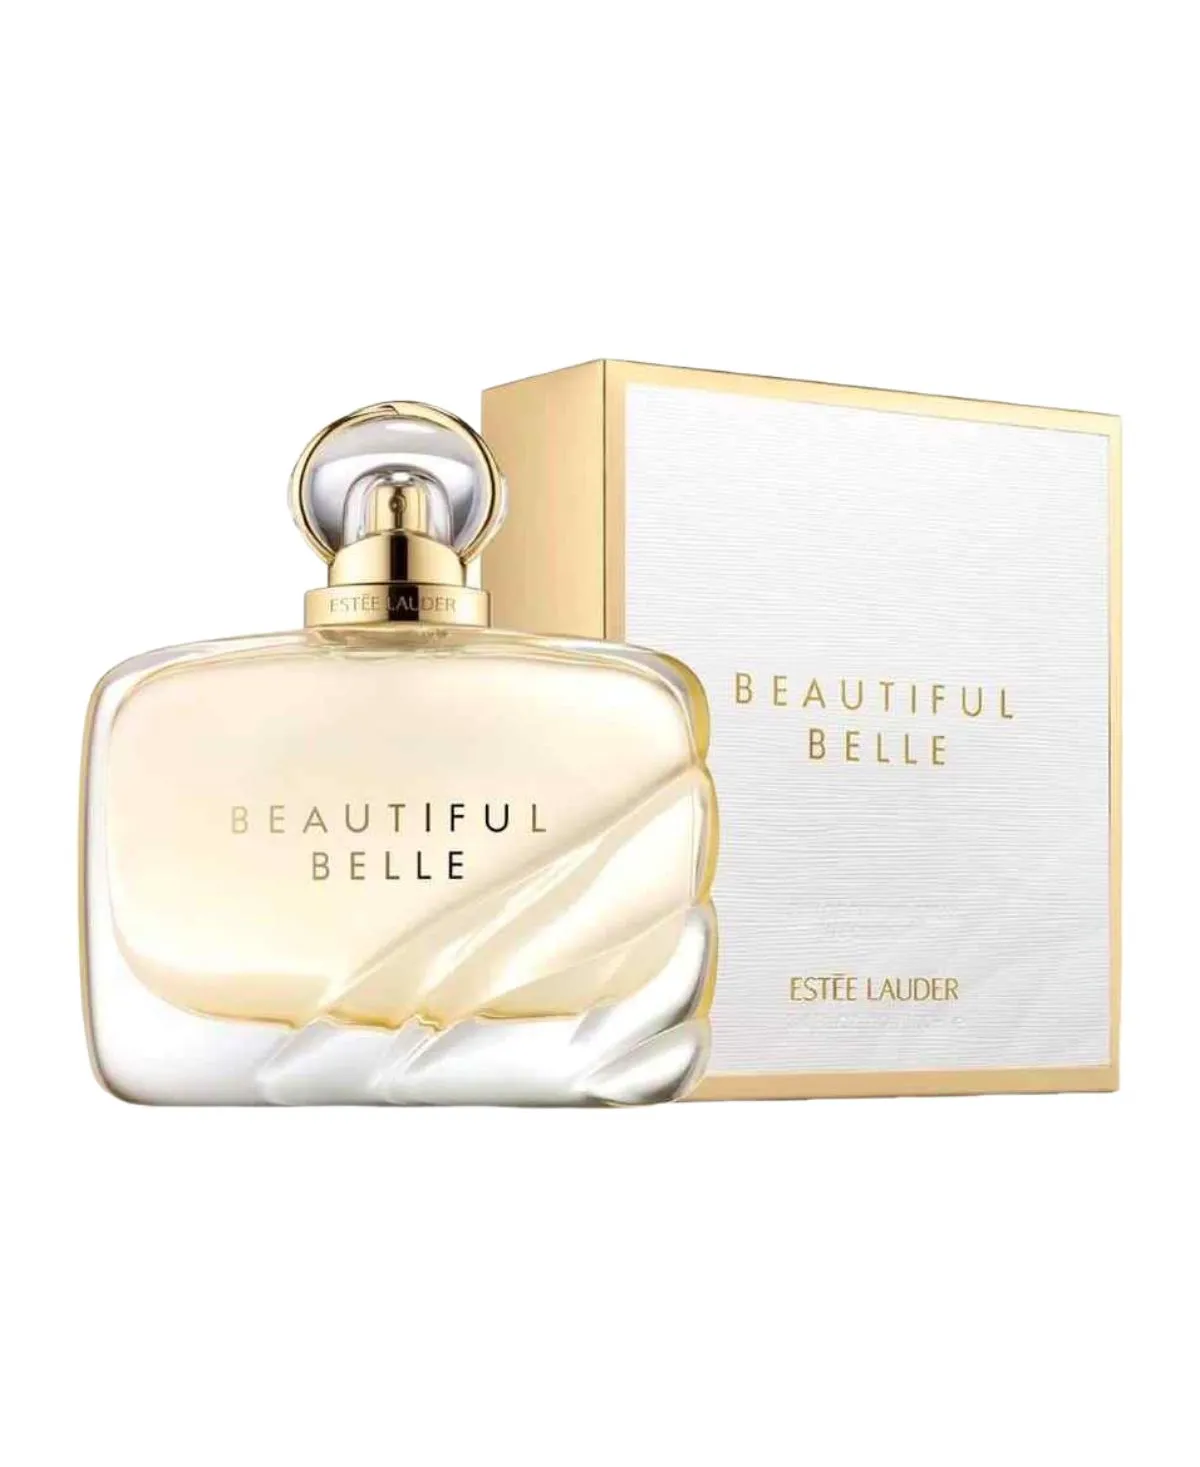 Estee Lauder Beautiful Belle for Women Eau de Parfum (EDP) Spray 3.4 oz (100 ml) 887167330443